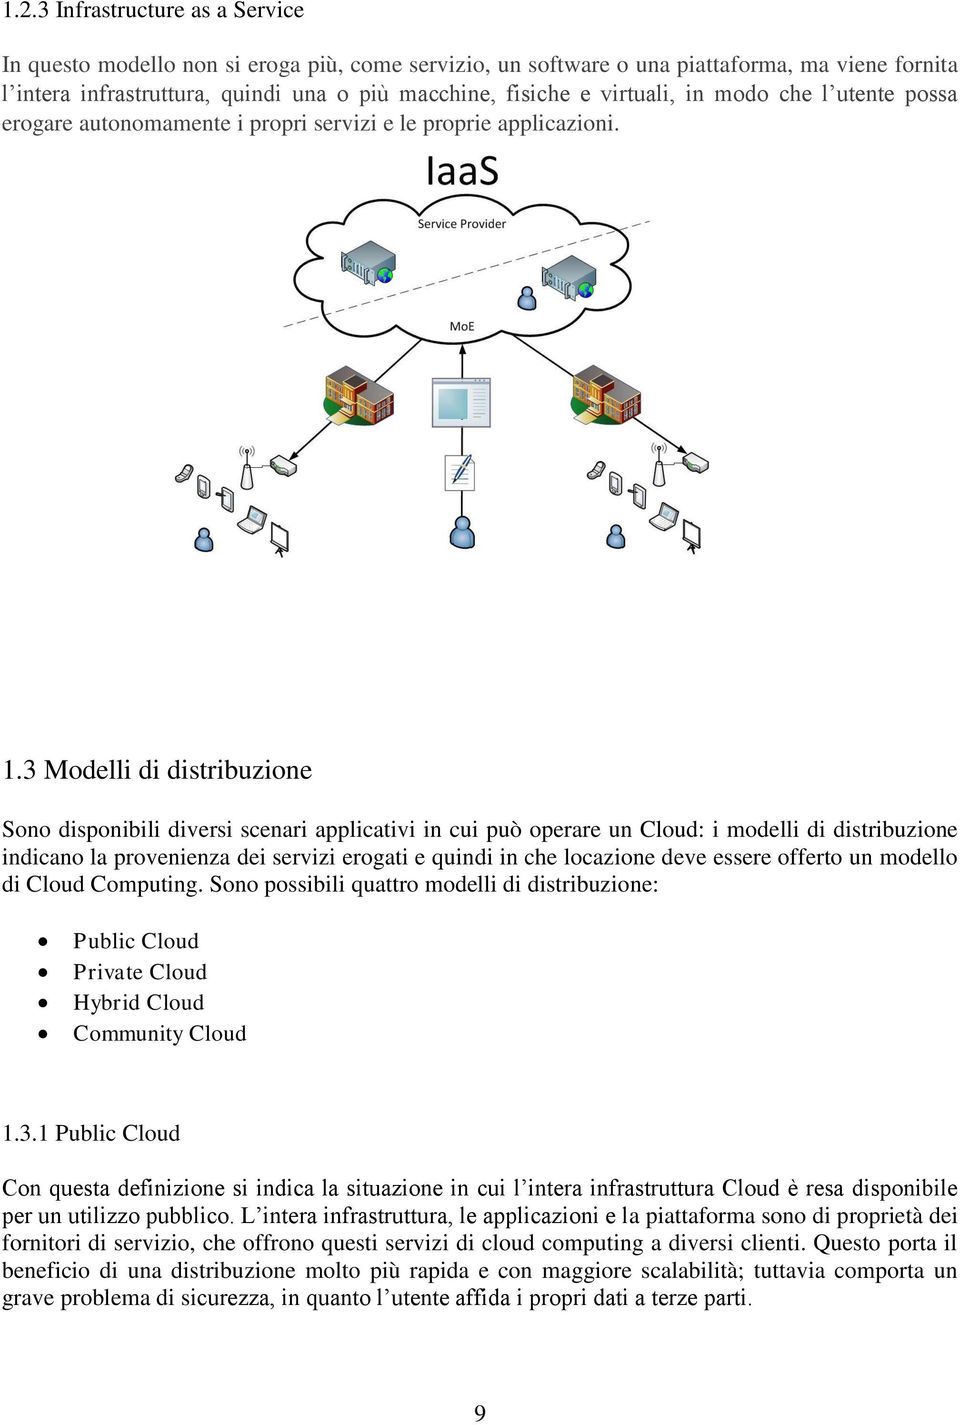 3 Modelli di distribuzione Sono disponibili diversi scenari applicativi in cui può operare un Cloud: i modelli di distribuzione indicano la provenienza dei servizi erogati e quindi in che locazione